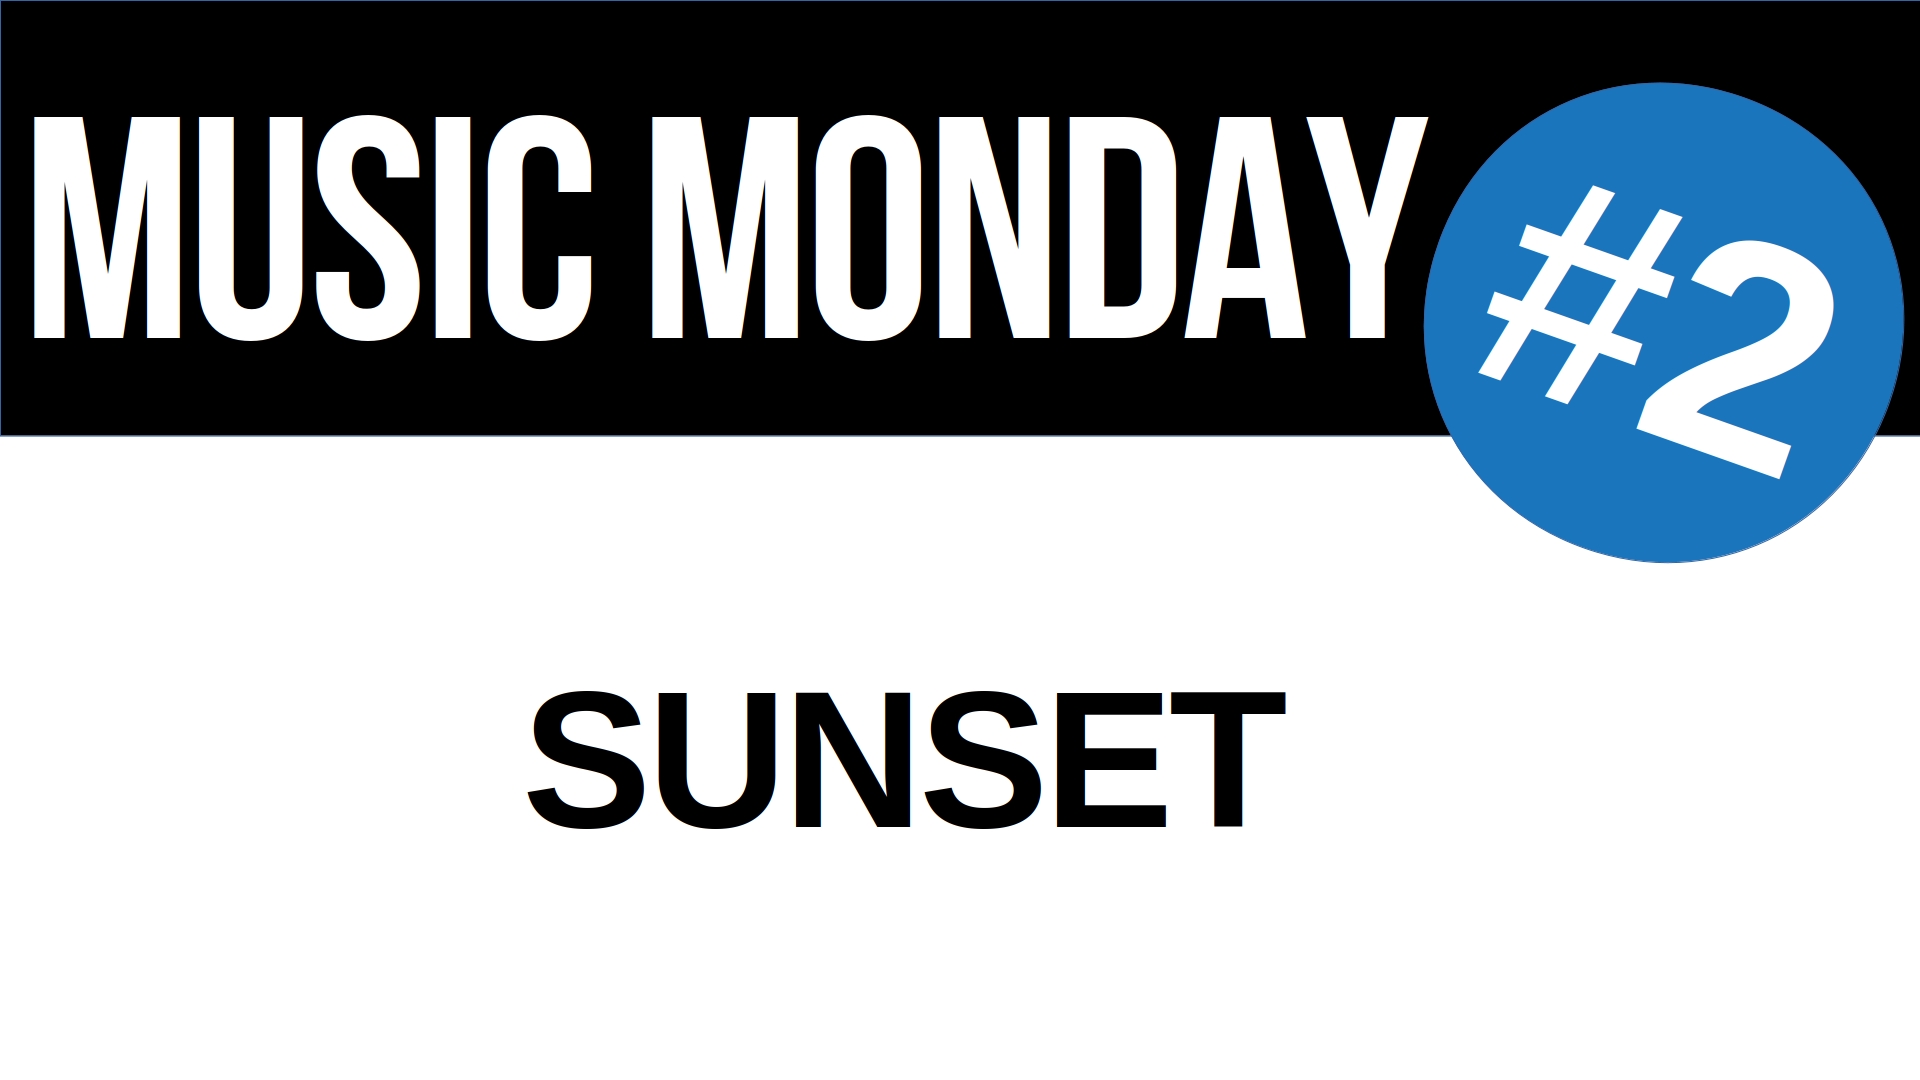 Music Monday 2: Sunset